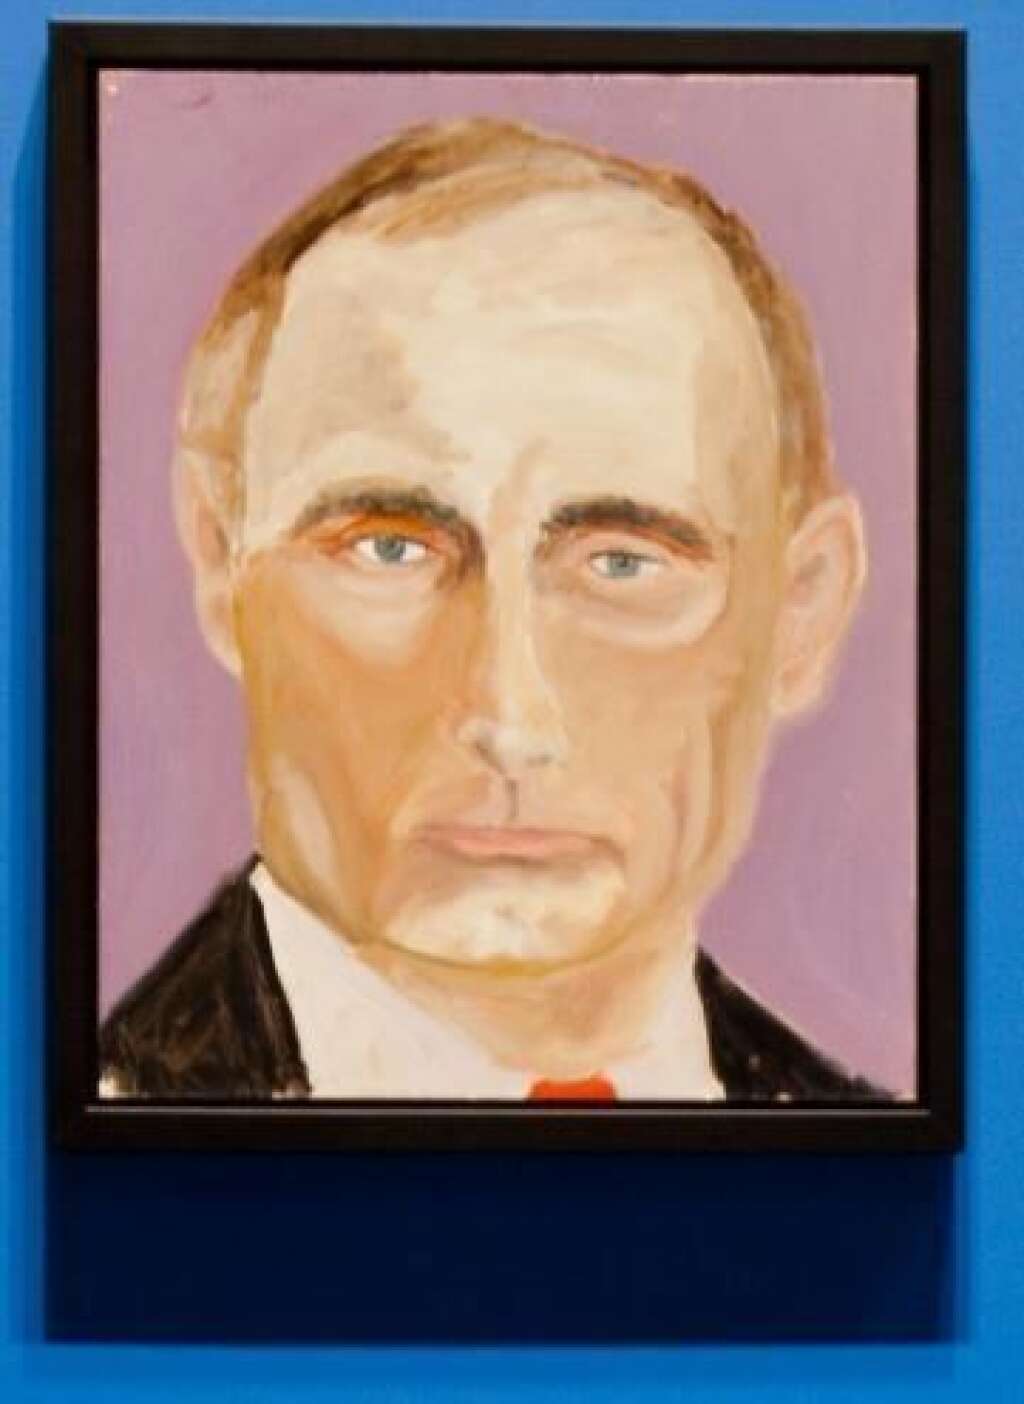 Les portraits de George W. Bush - Vladimir Poutine